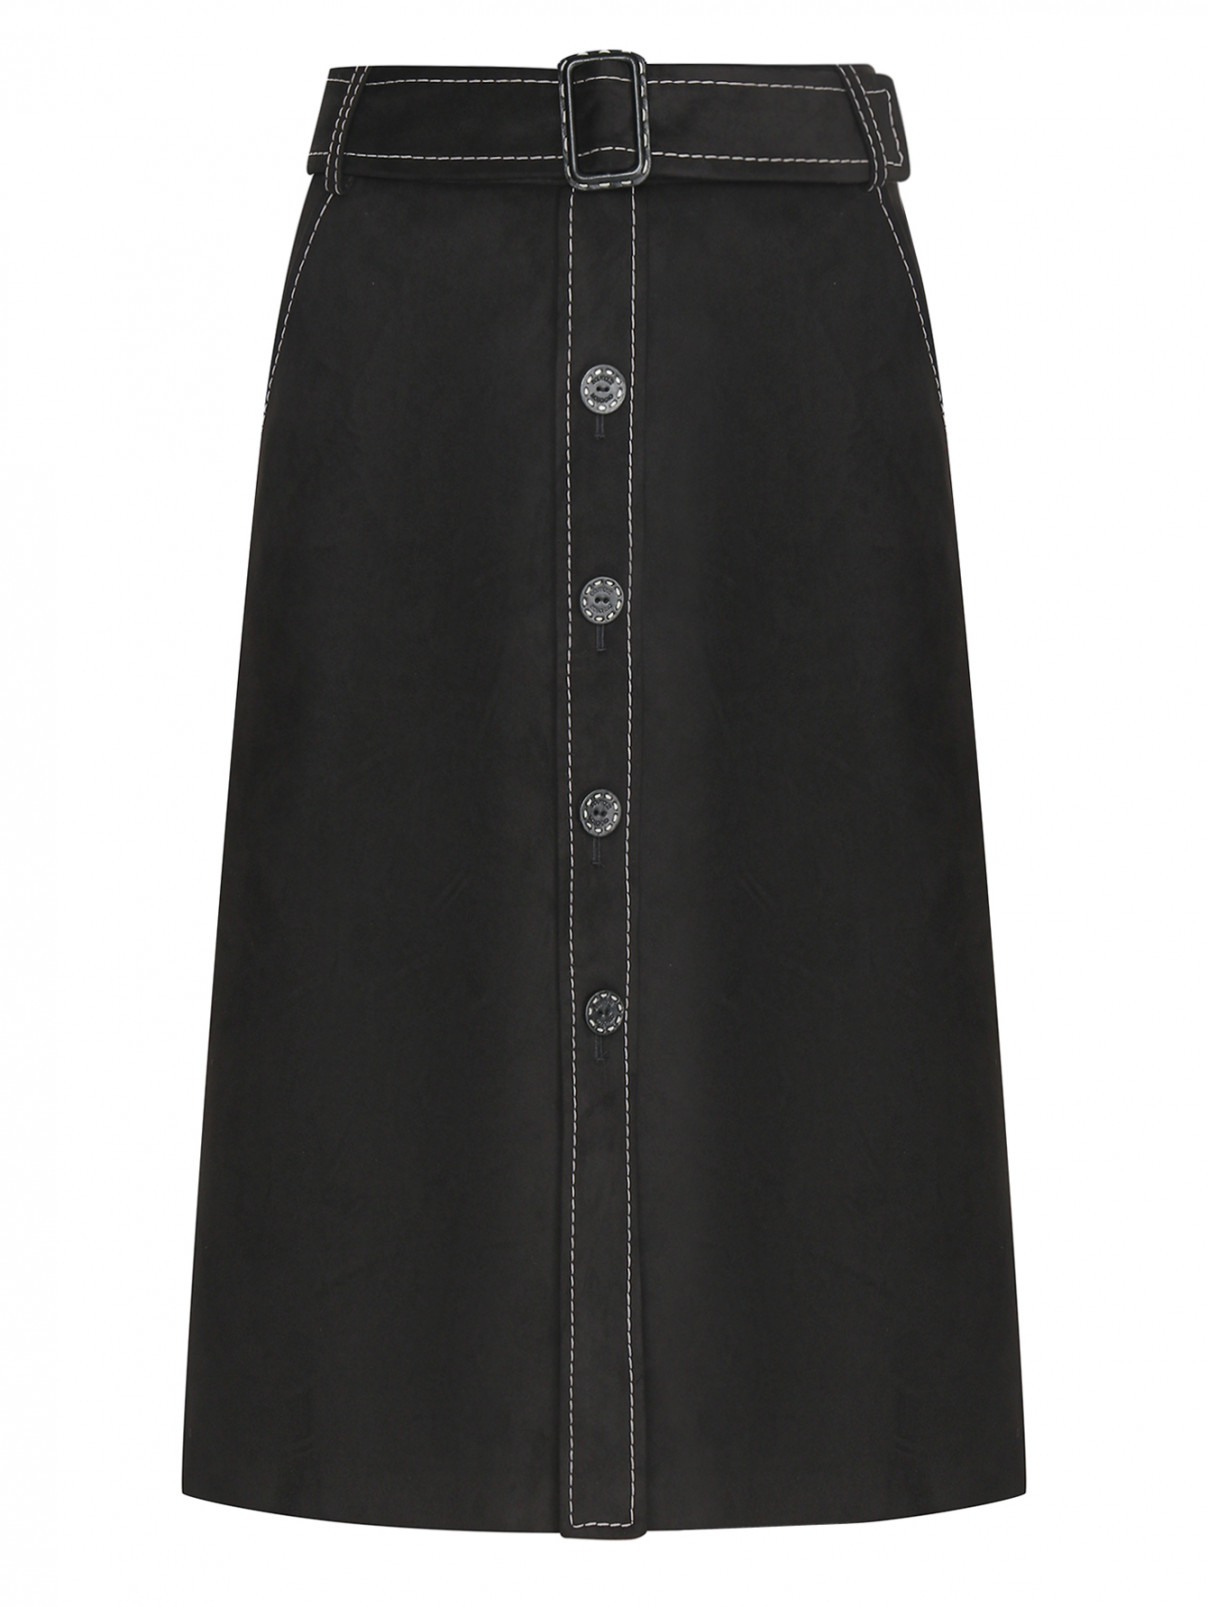 Юбка на пуговицах с карманами Moschino Boutique  –  Общий вид  – Цвет:  Черный